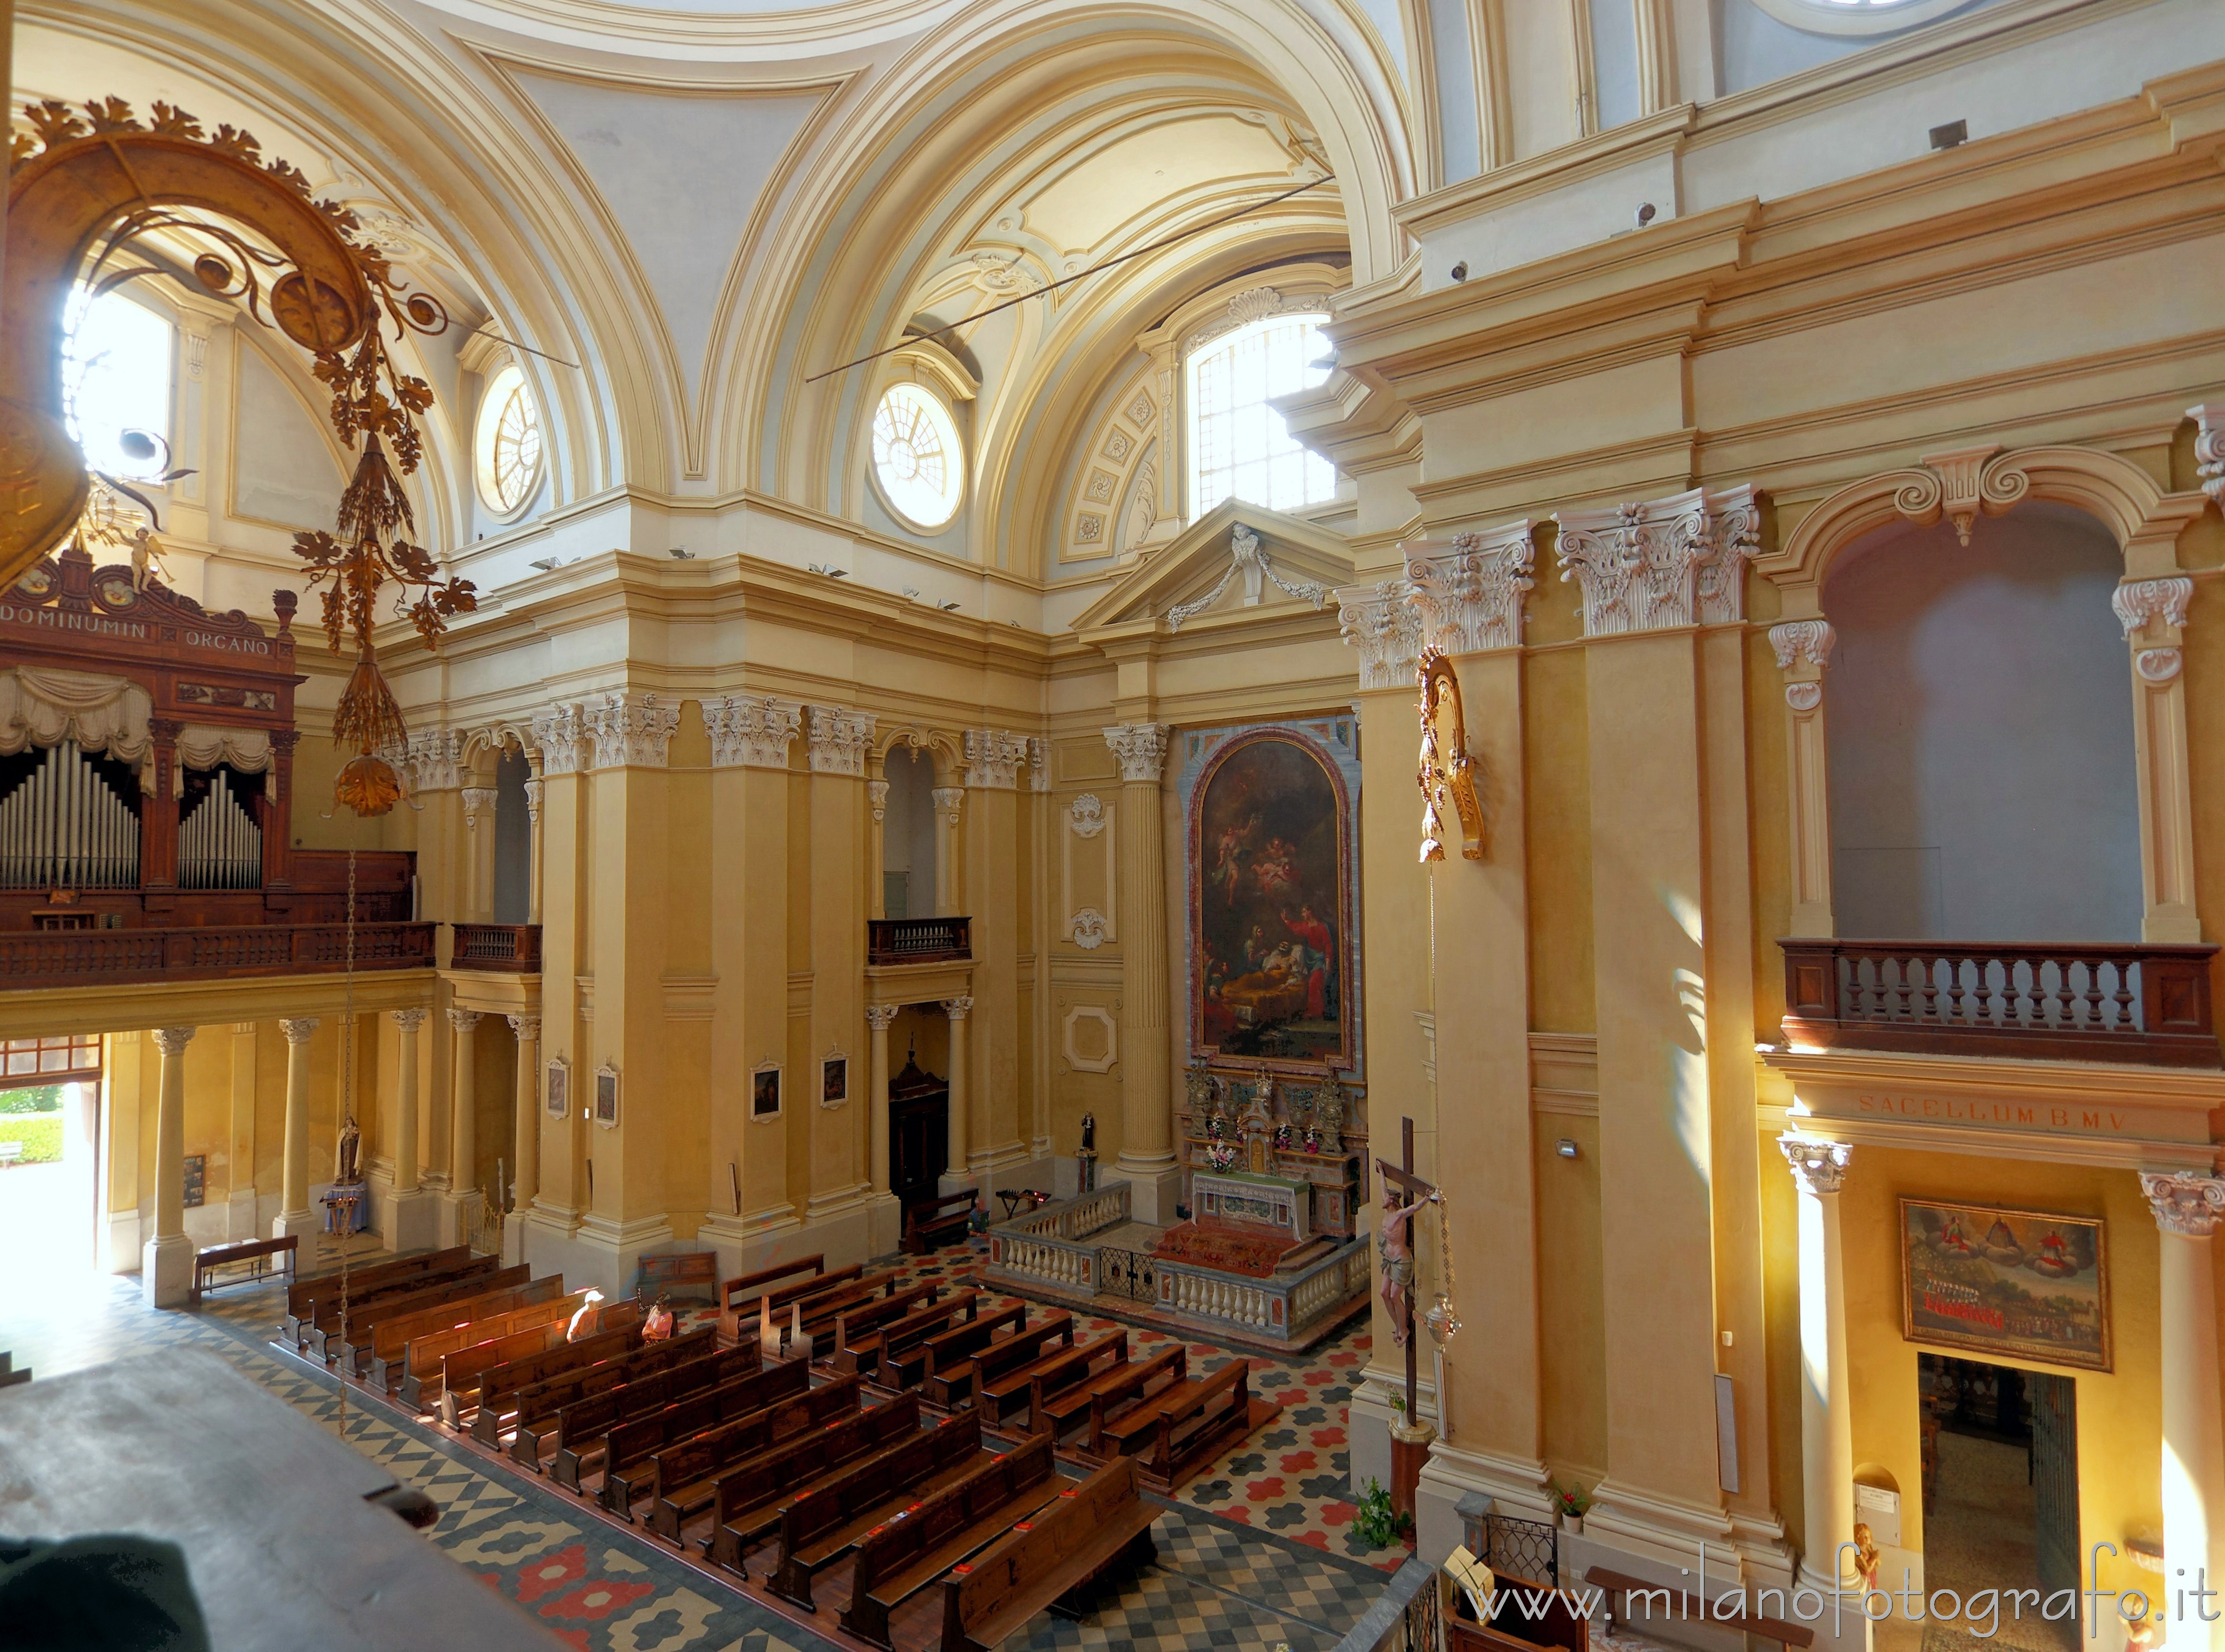 Graglia (Biella, Italy): Interior of the church of the sanctuary seen from an internal balcony - Graglia (Biella, Italy)